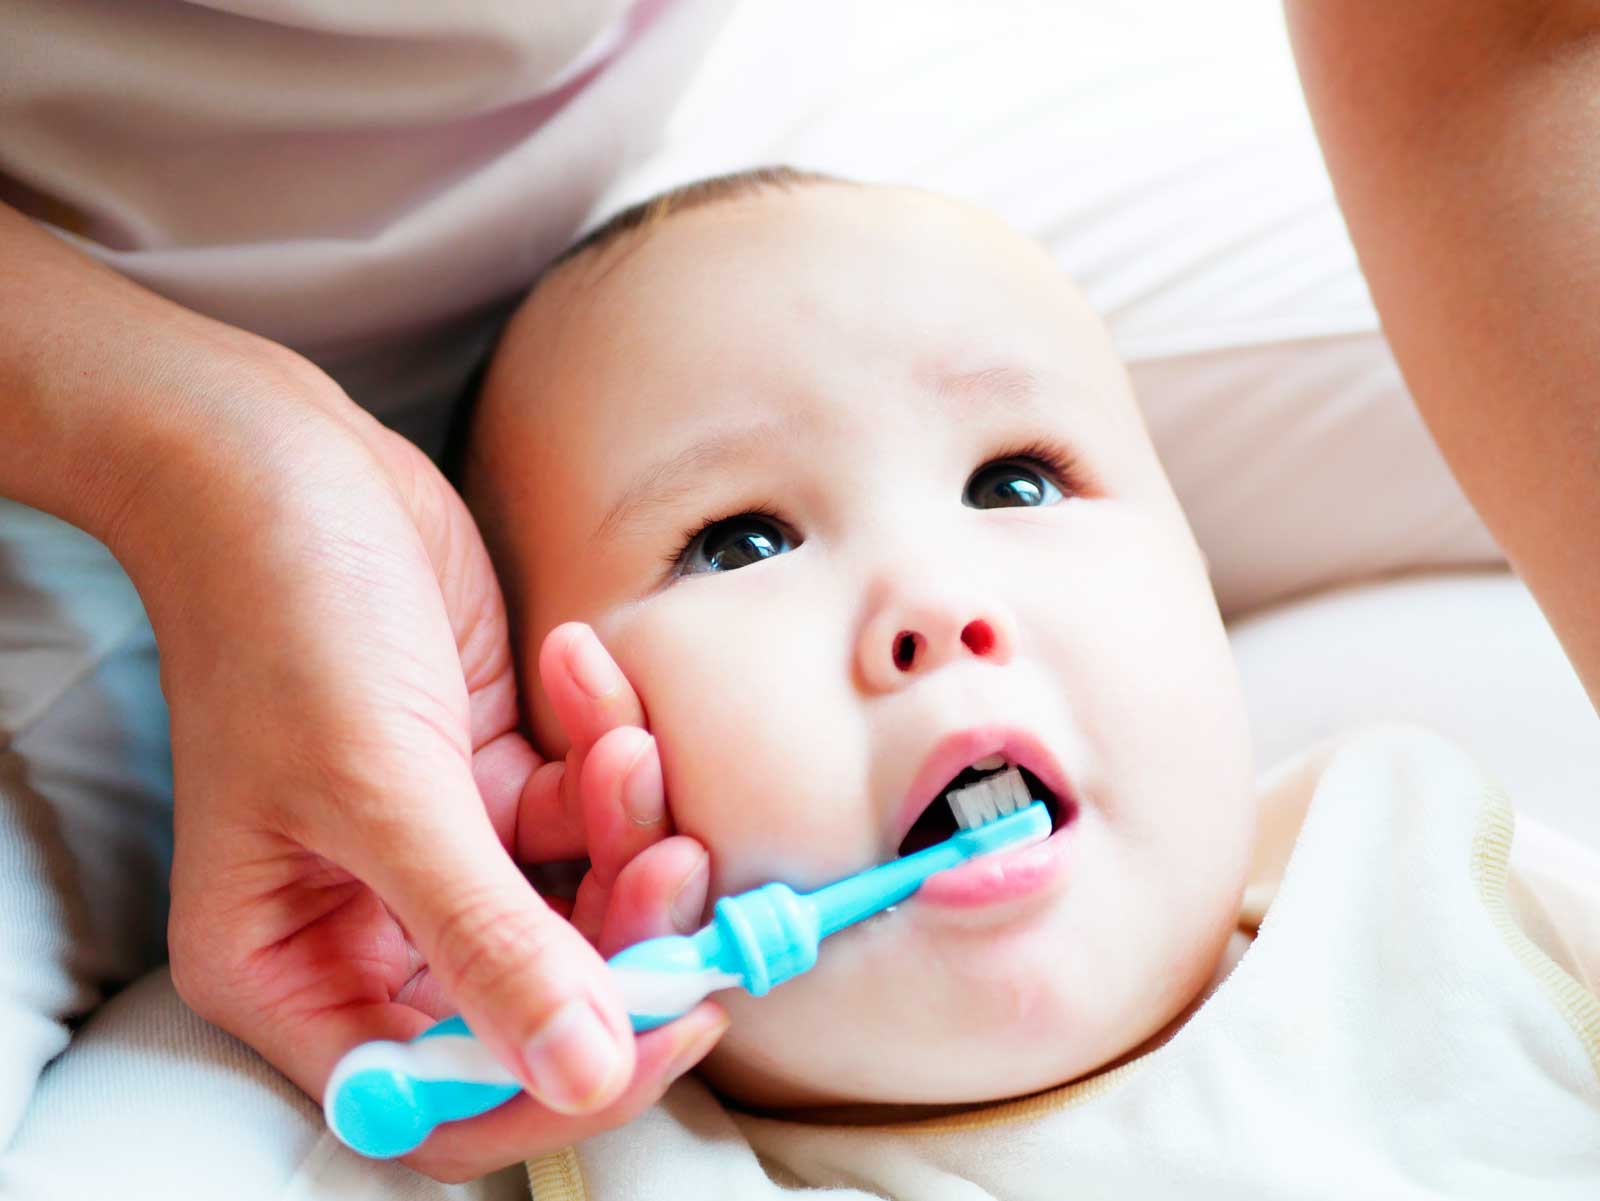 gancho Predicar fantasma El cepillado de dientes en el bebe - Perioss Centro Dental